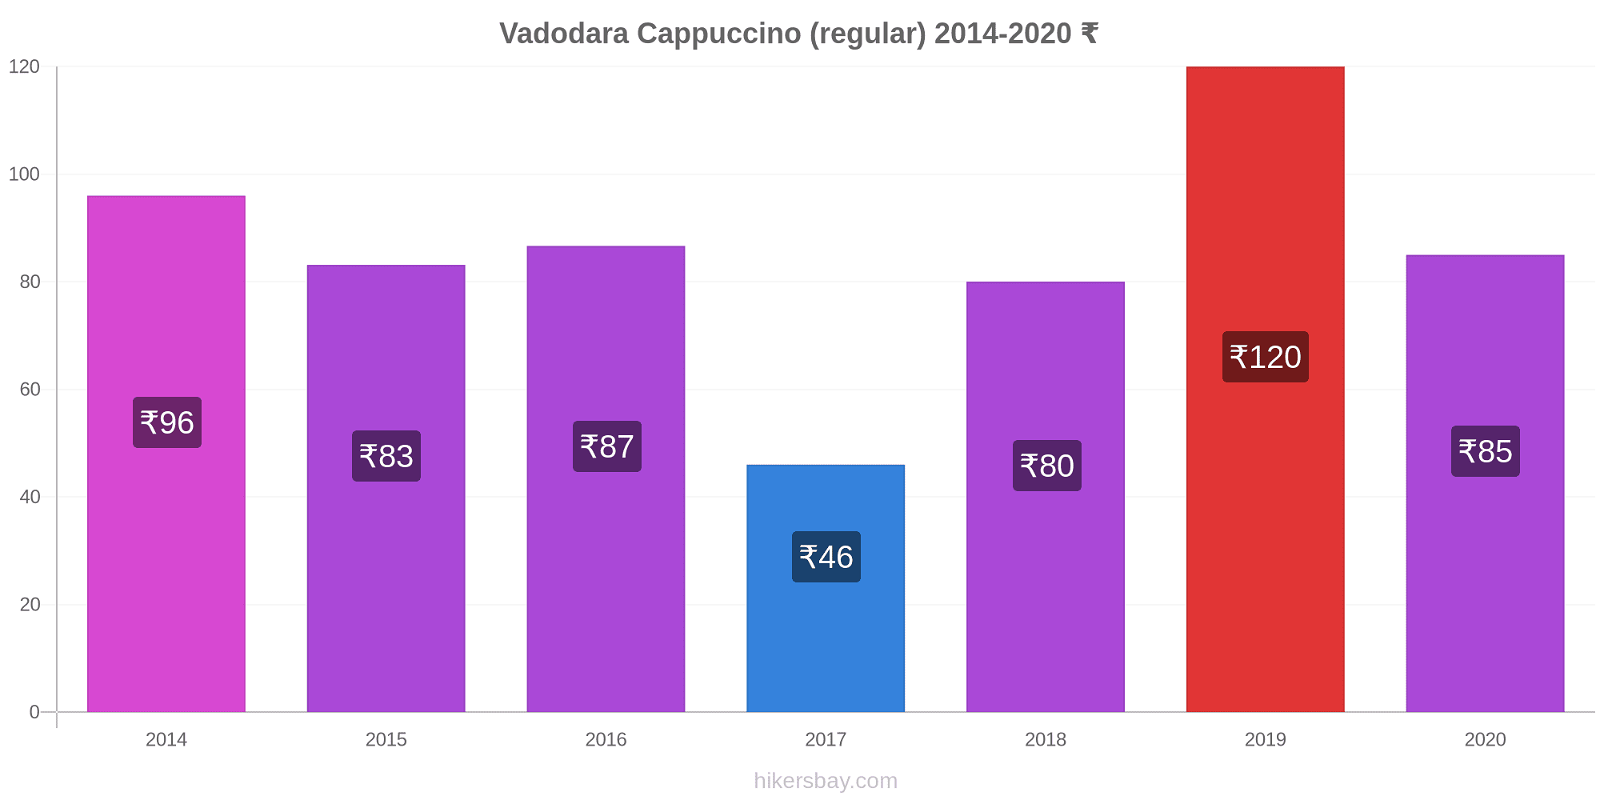 Vadodara price changes Cappuccino (regular) hikersbay.com